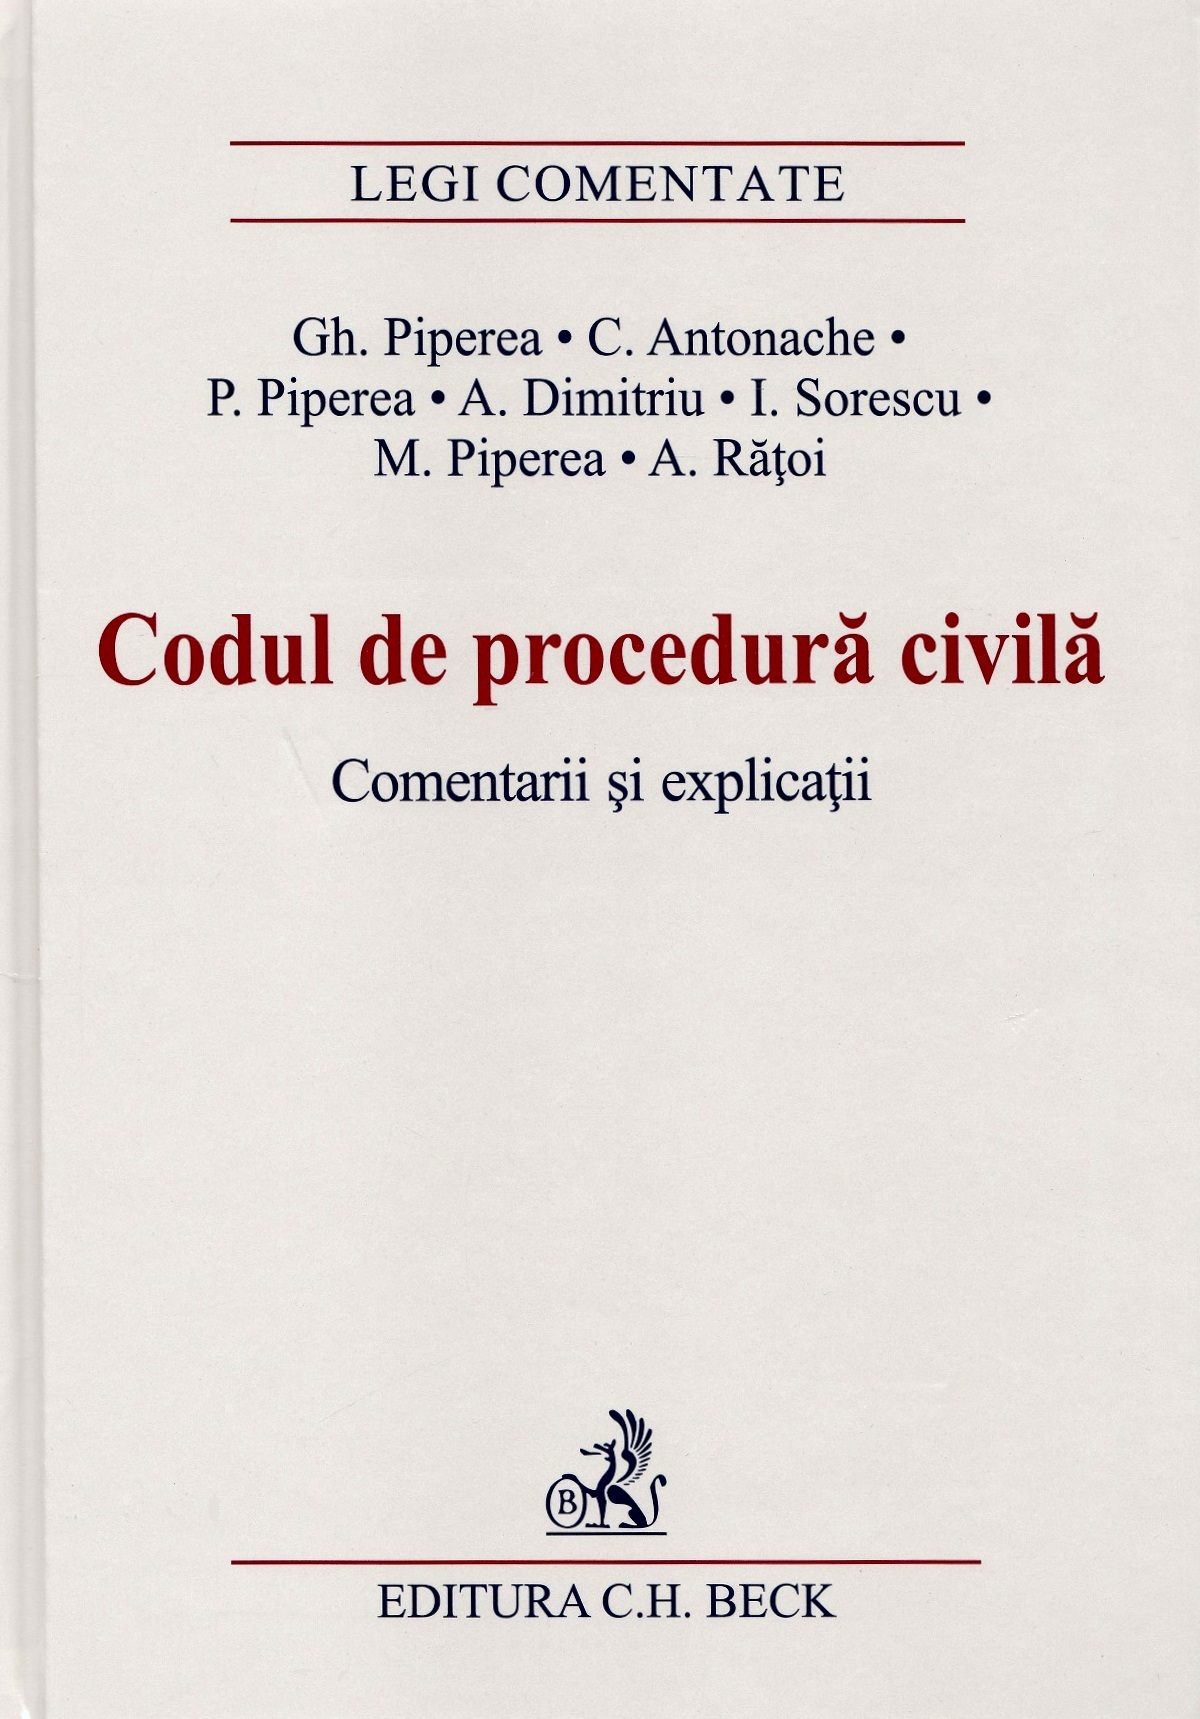 Codul de procedura civila. Comentarii si explicatii - Gh. Piperea, C. Antonache